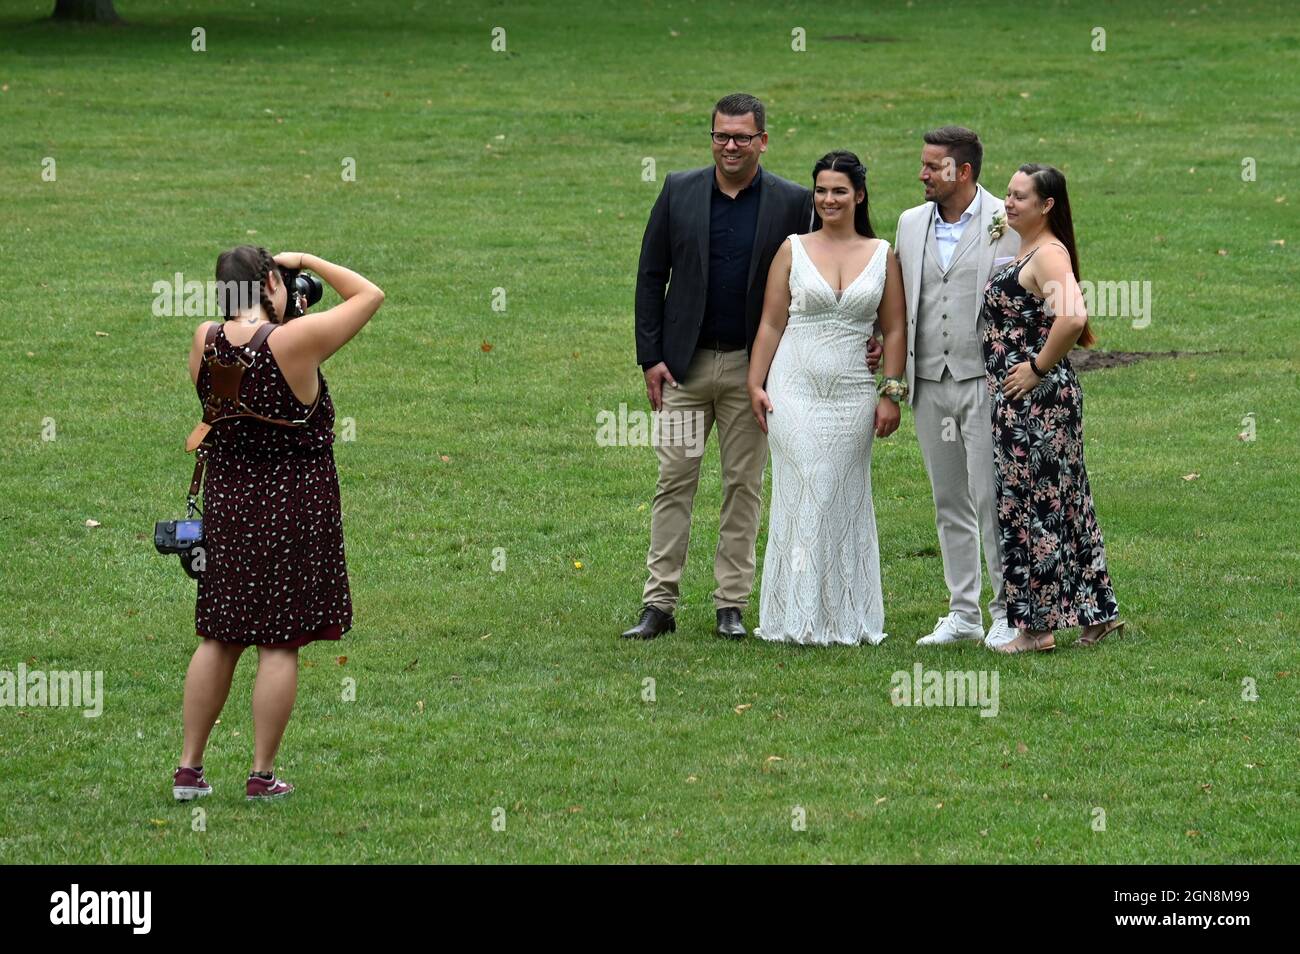 Photographe prenant des photos d'un couple de mariage avec leurs groommen Banque D'Images